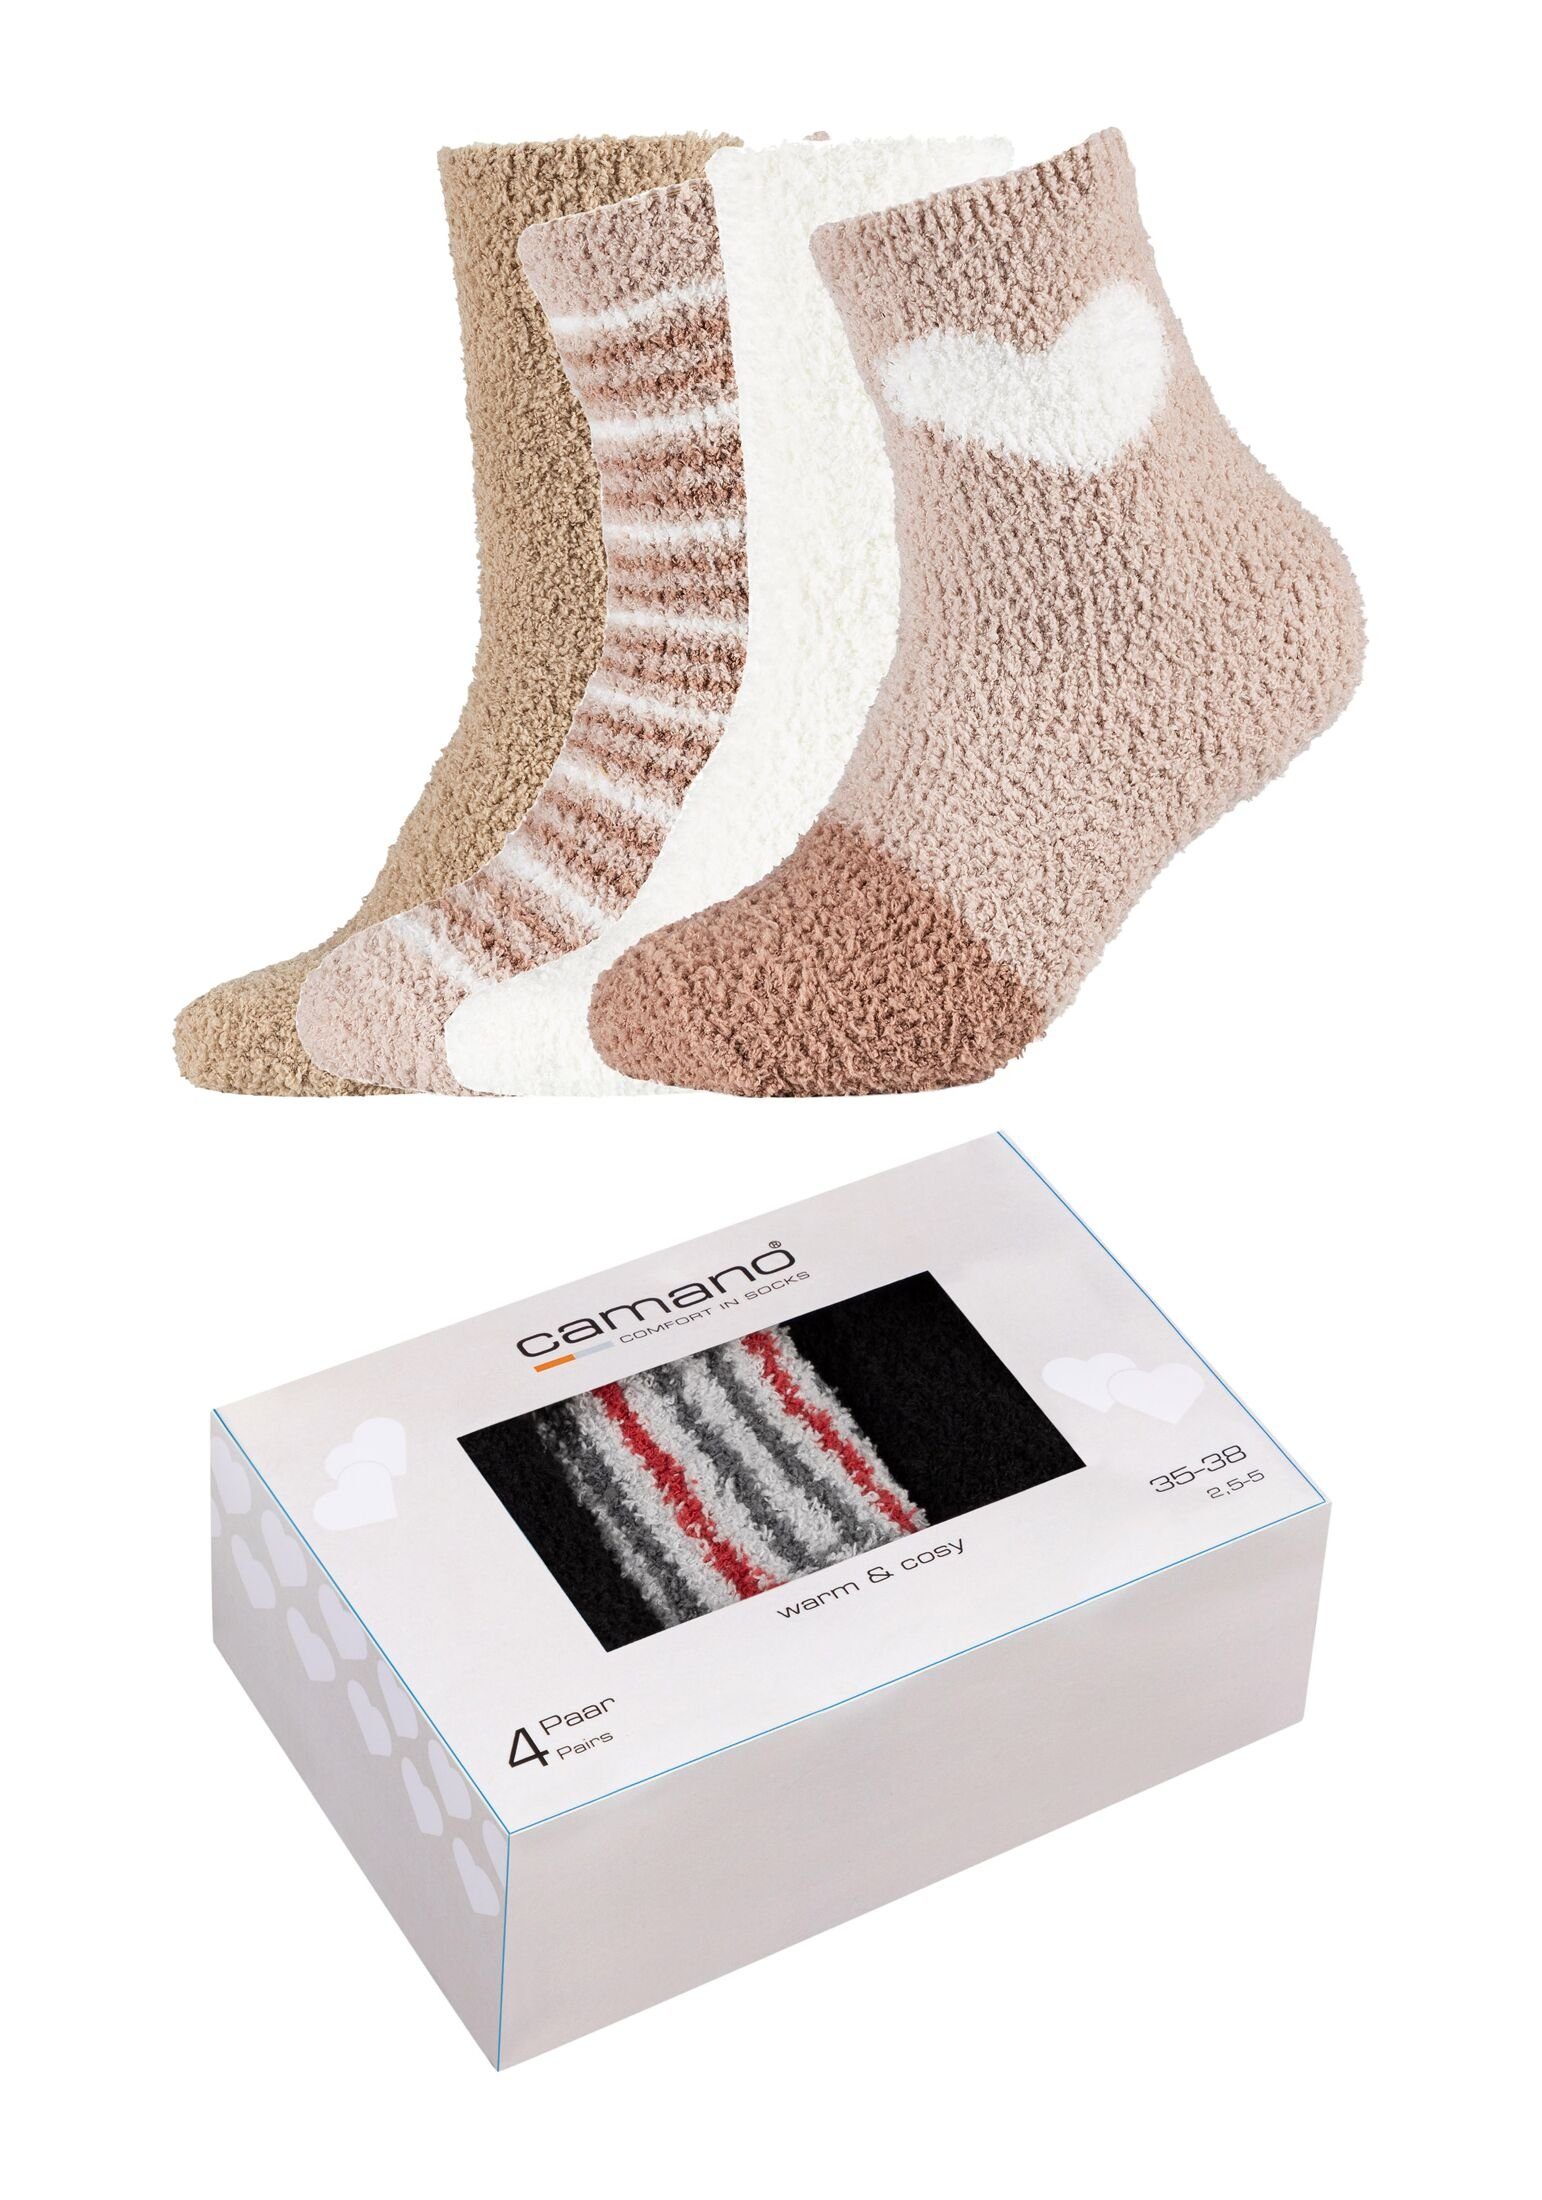 Socken wärmendes, Socken Supercozy 4er durch weiches Camano Mischgewebe Pack,